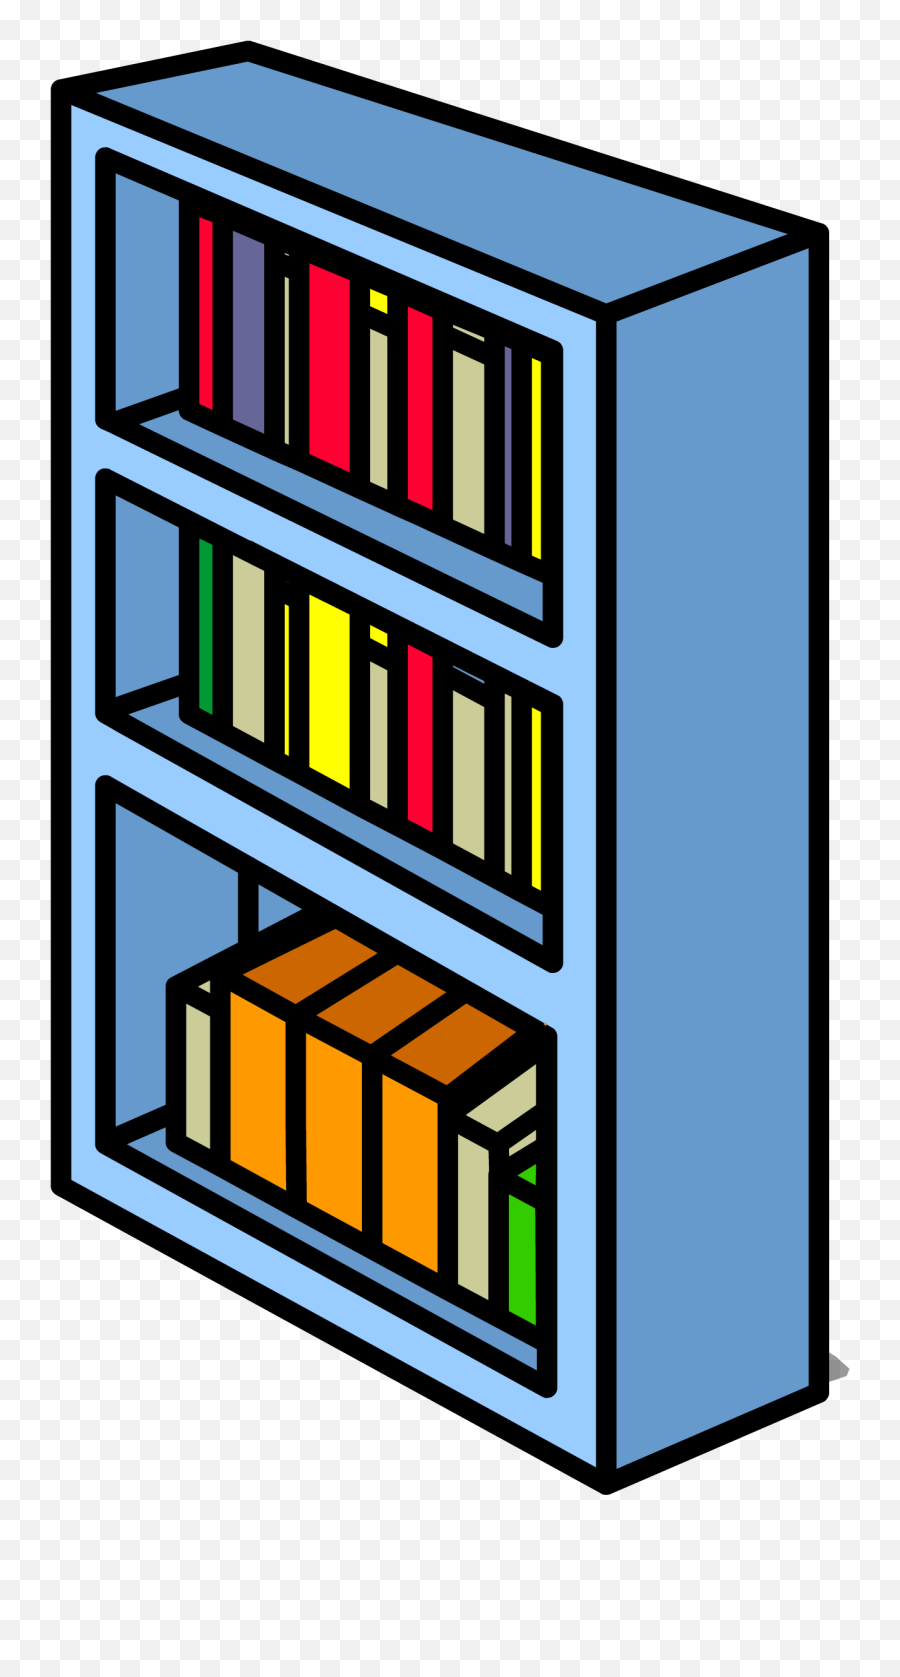 Bookshelf Clip Track Bookshelf Transparent Png Download Bookshelf Clipart Background Transparent Bookshelf Png Free Transparent Png Images Pngaaa Com